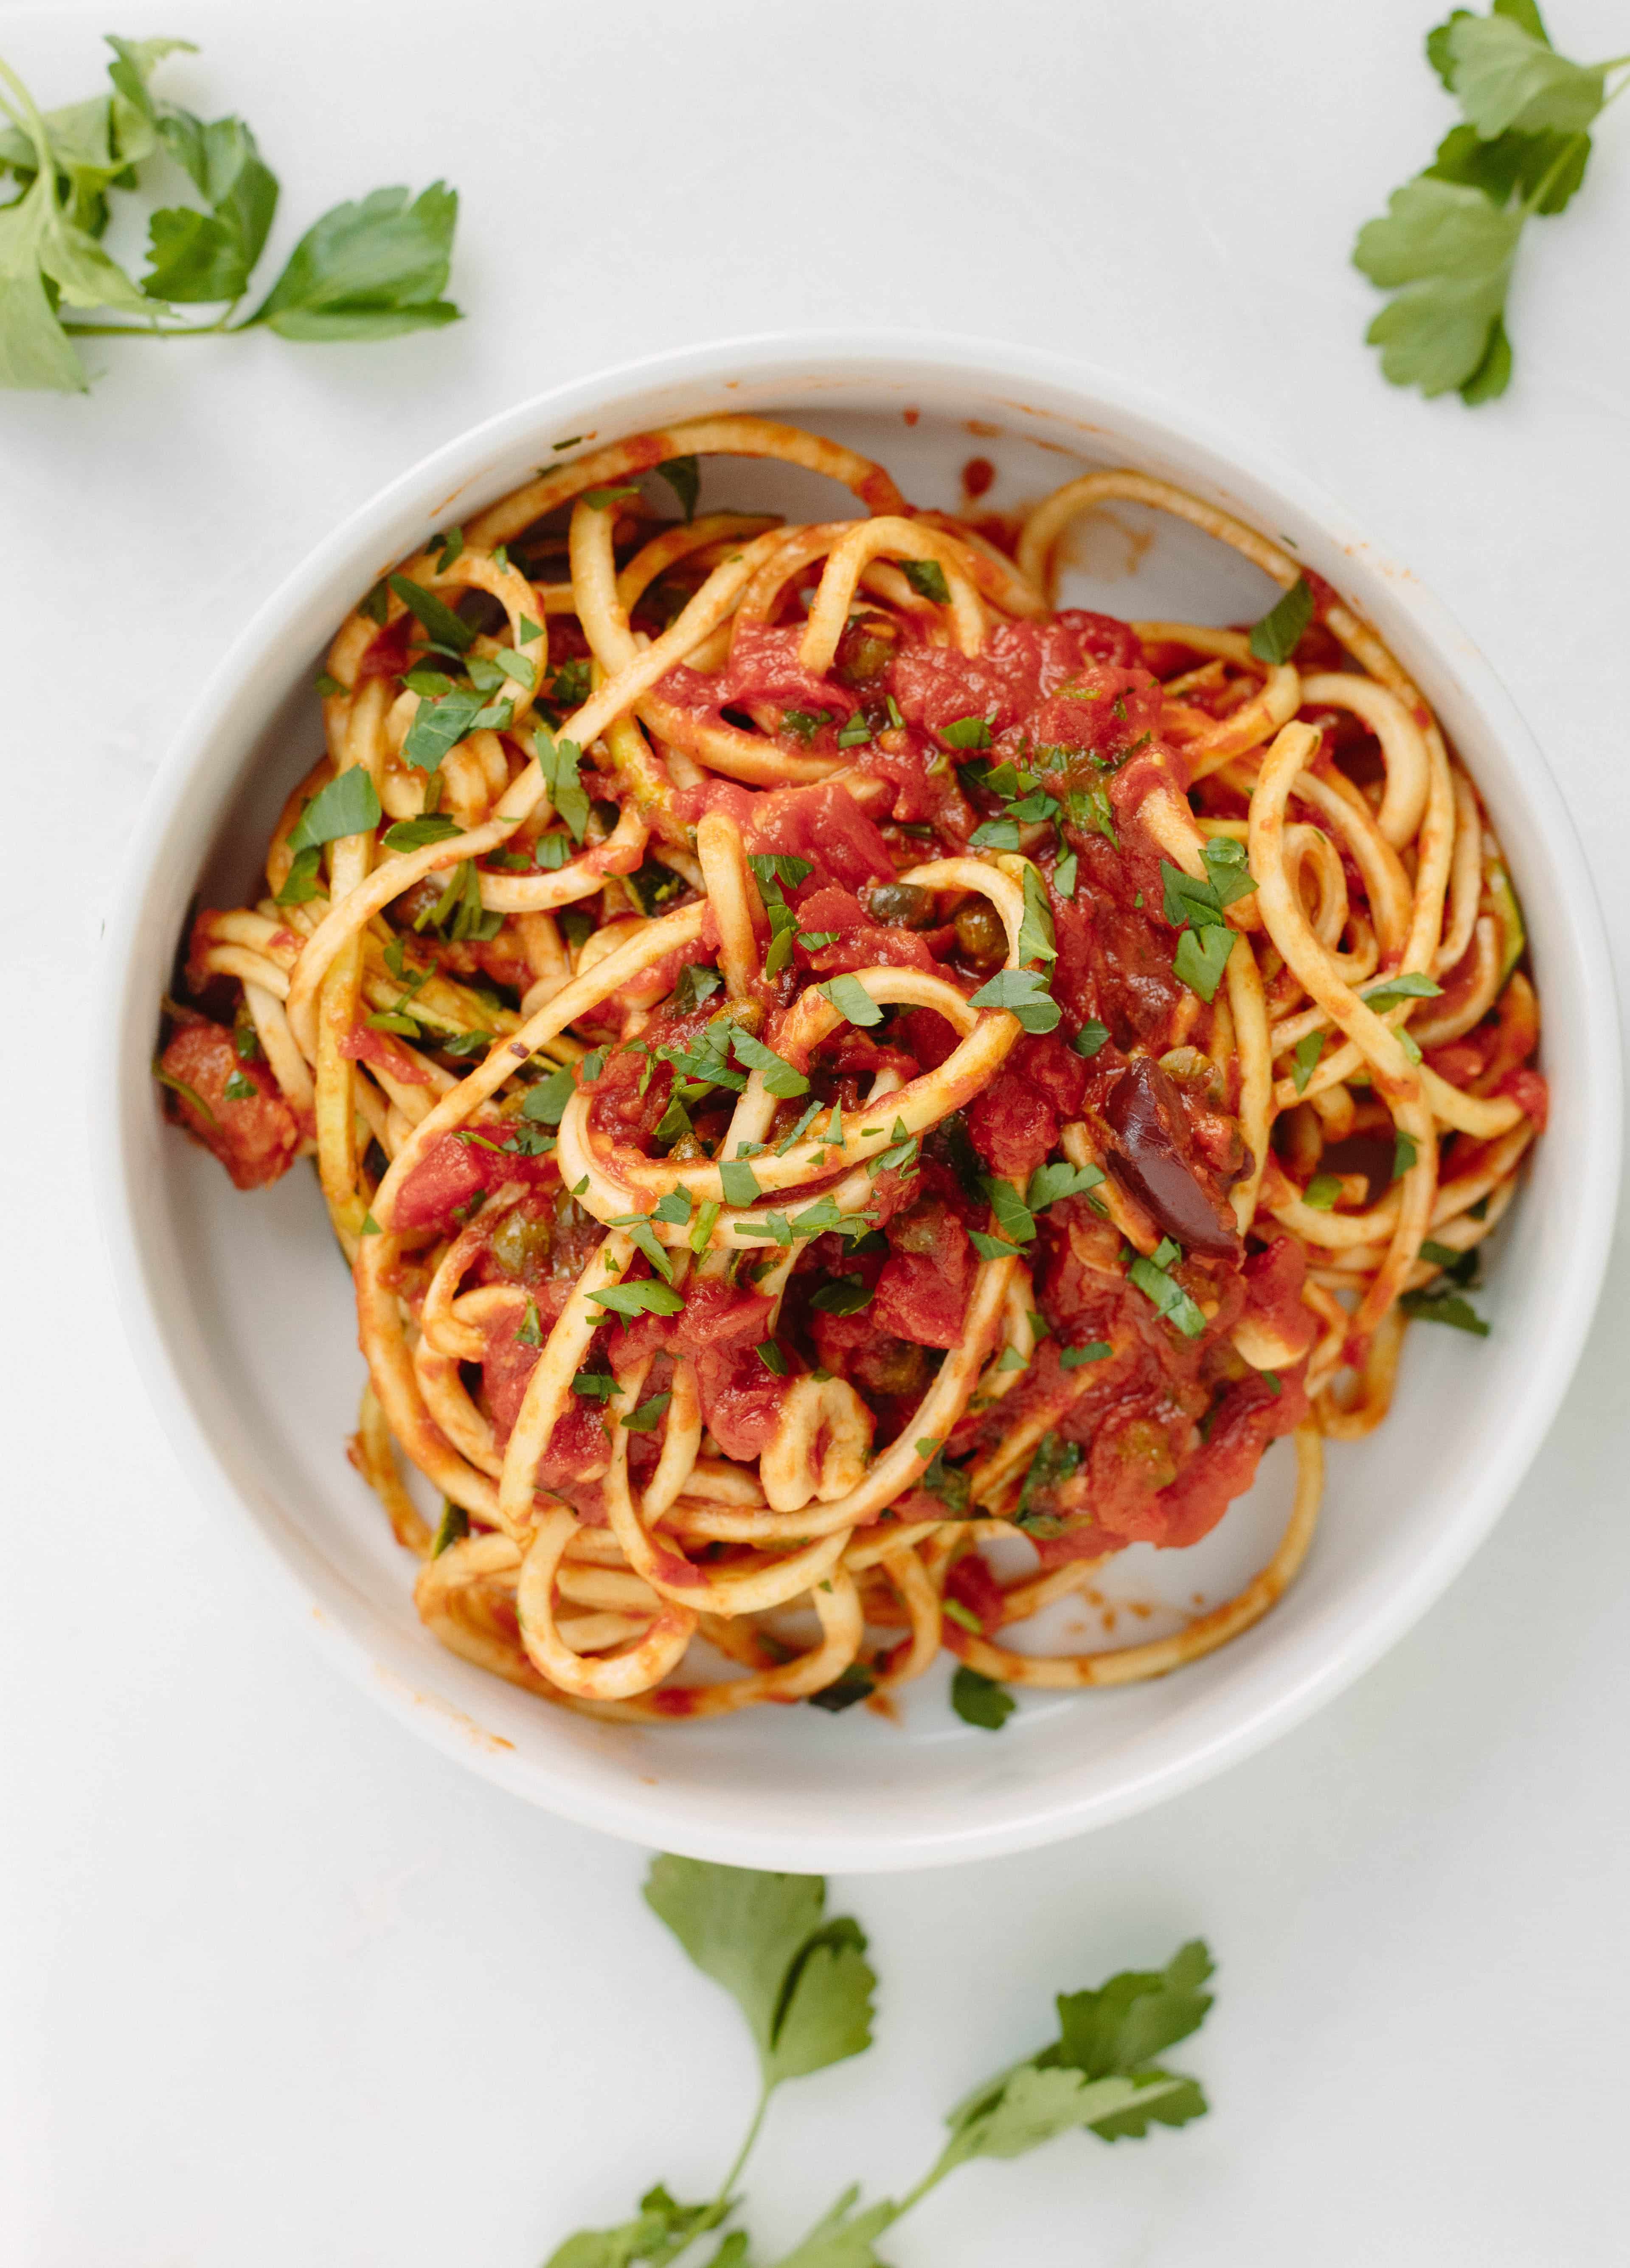 Inspiralized: Vegan Zucchini Spaghetti Puttanesca3840 x 5343